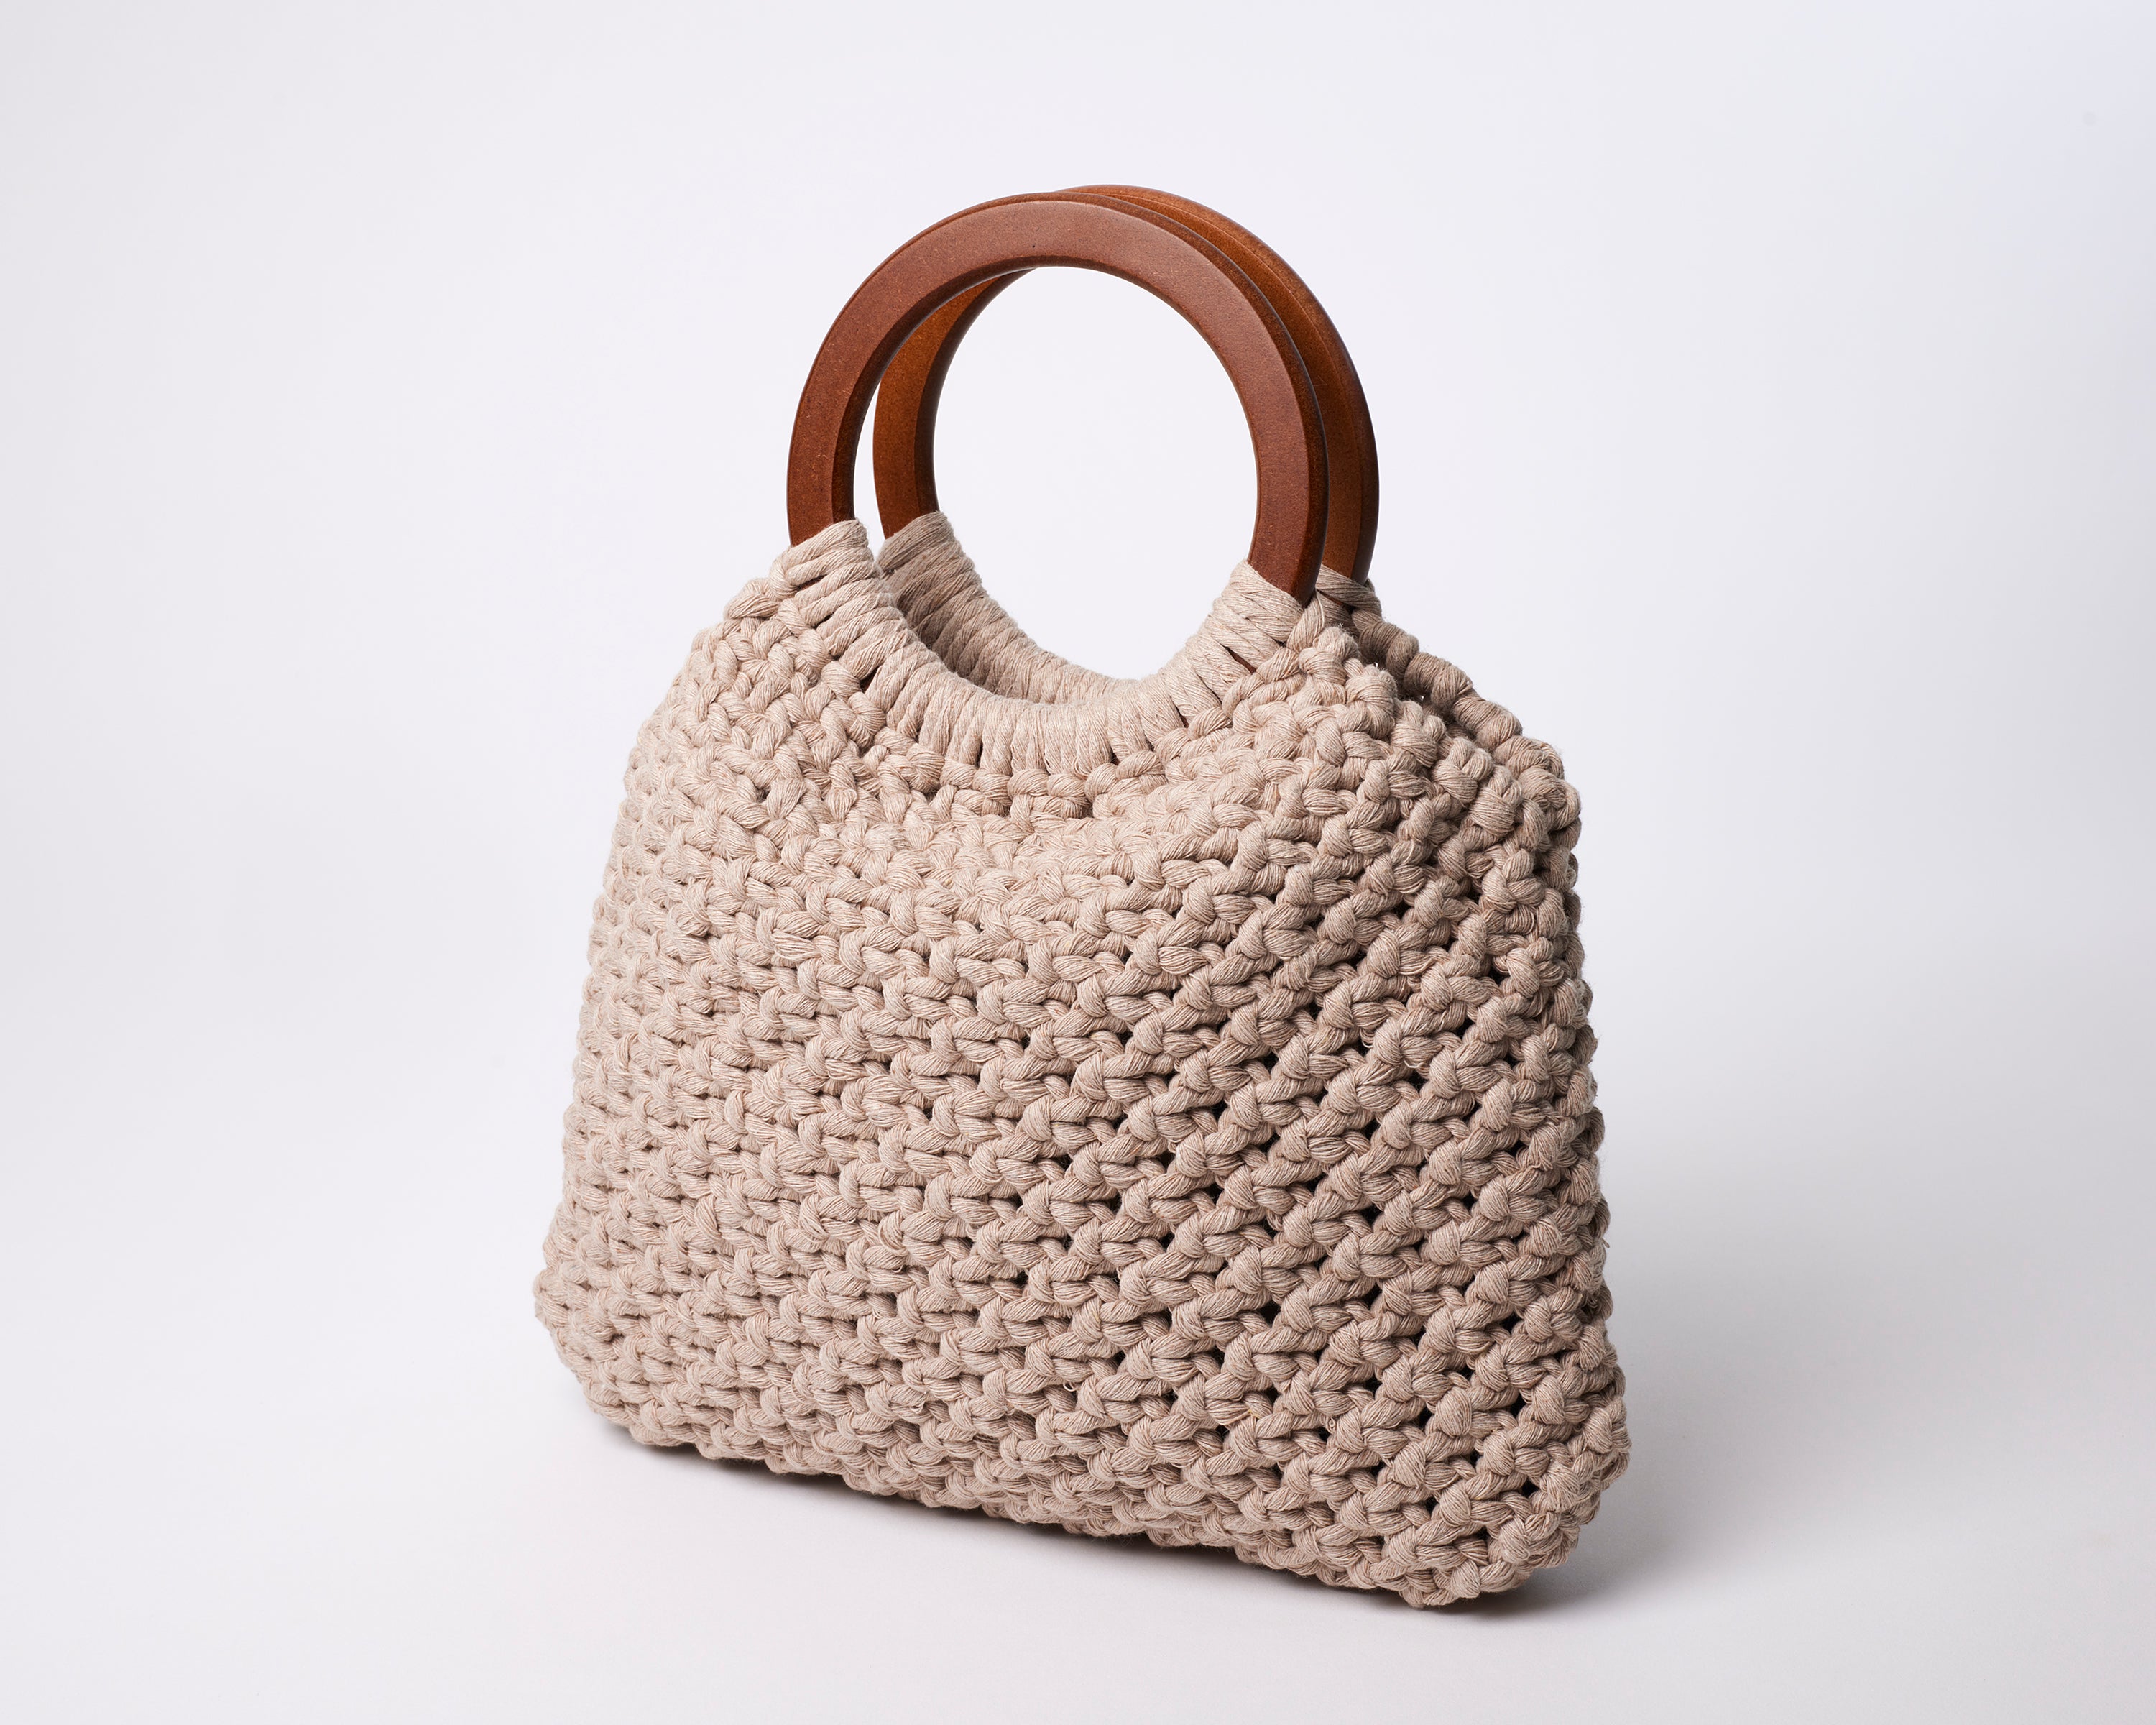 Crochet Shoulder Bag Tutorial /Macrame Crochet Bag /Beginner Crochet Bags -  YouTube